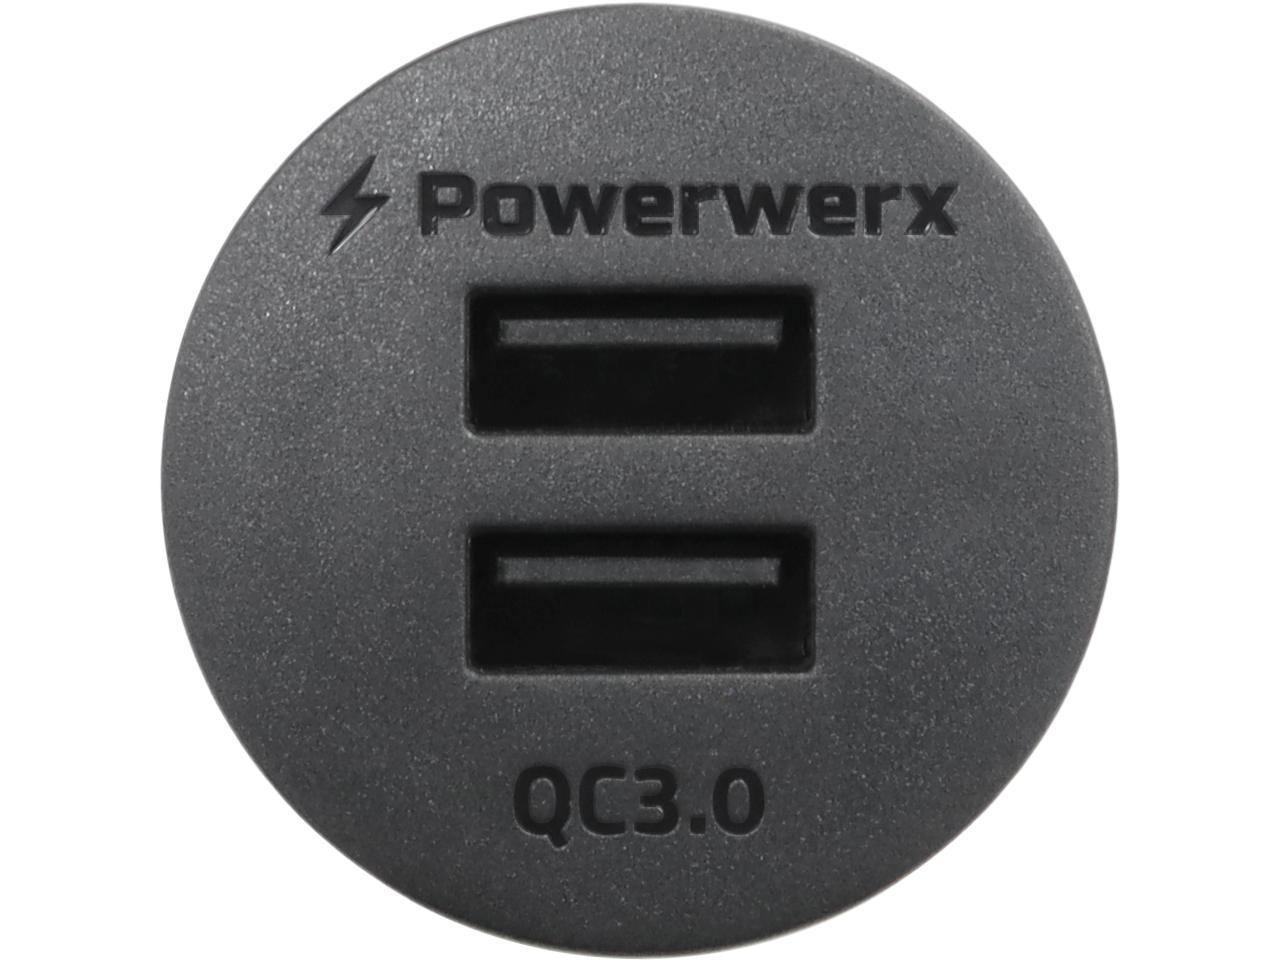 Powerwerx PanelDualQC3.0